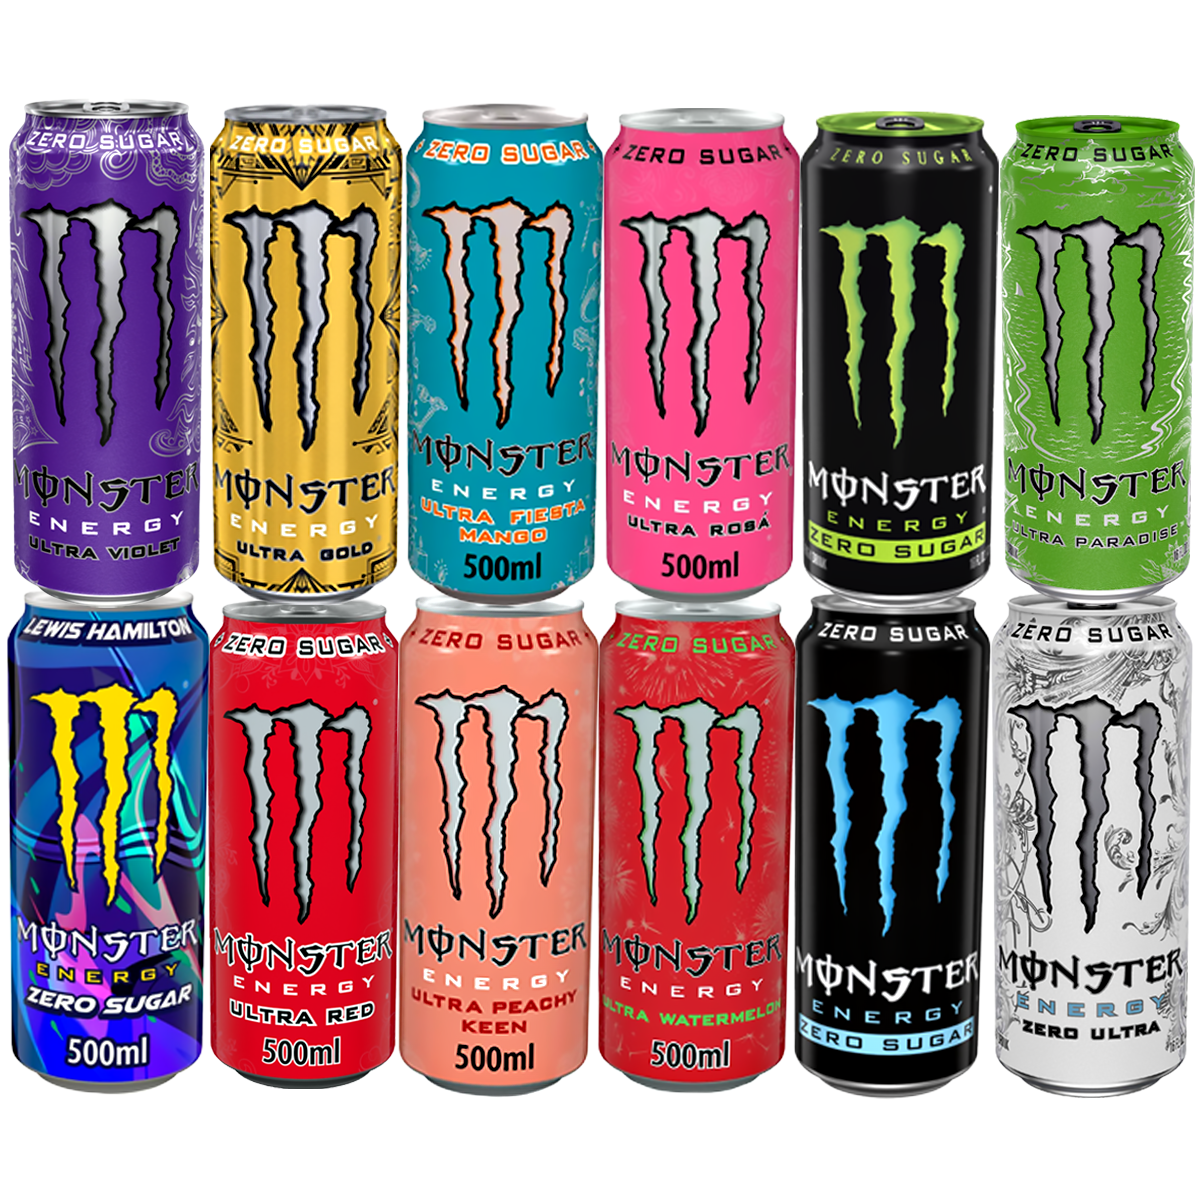 Monster Energy - Ultra Red - 12 x 473 ml